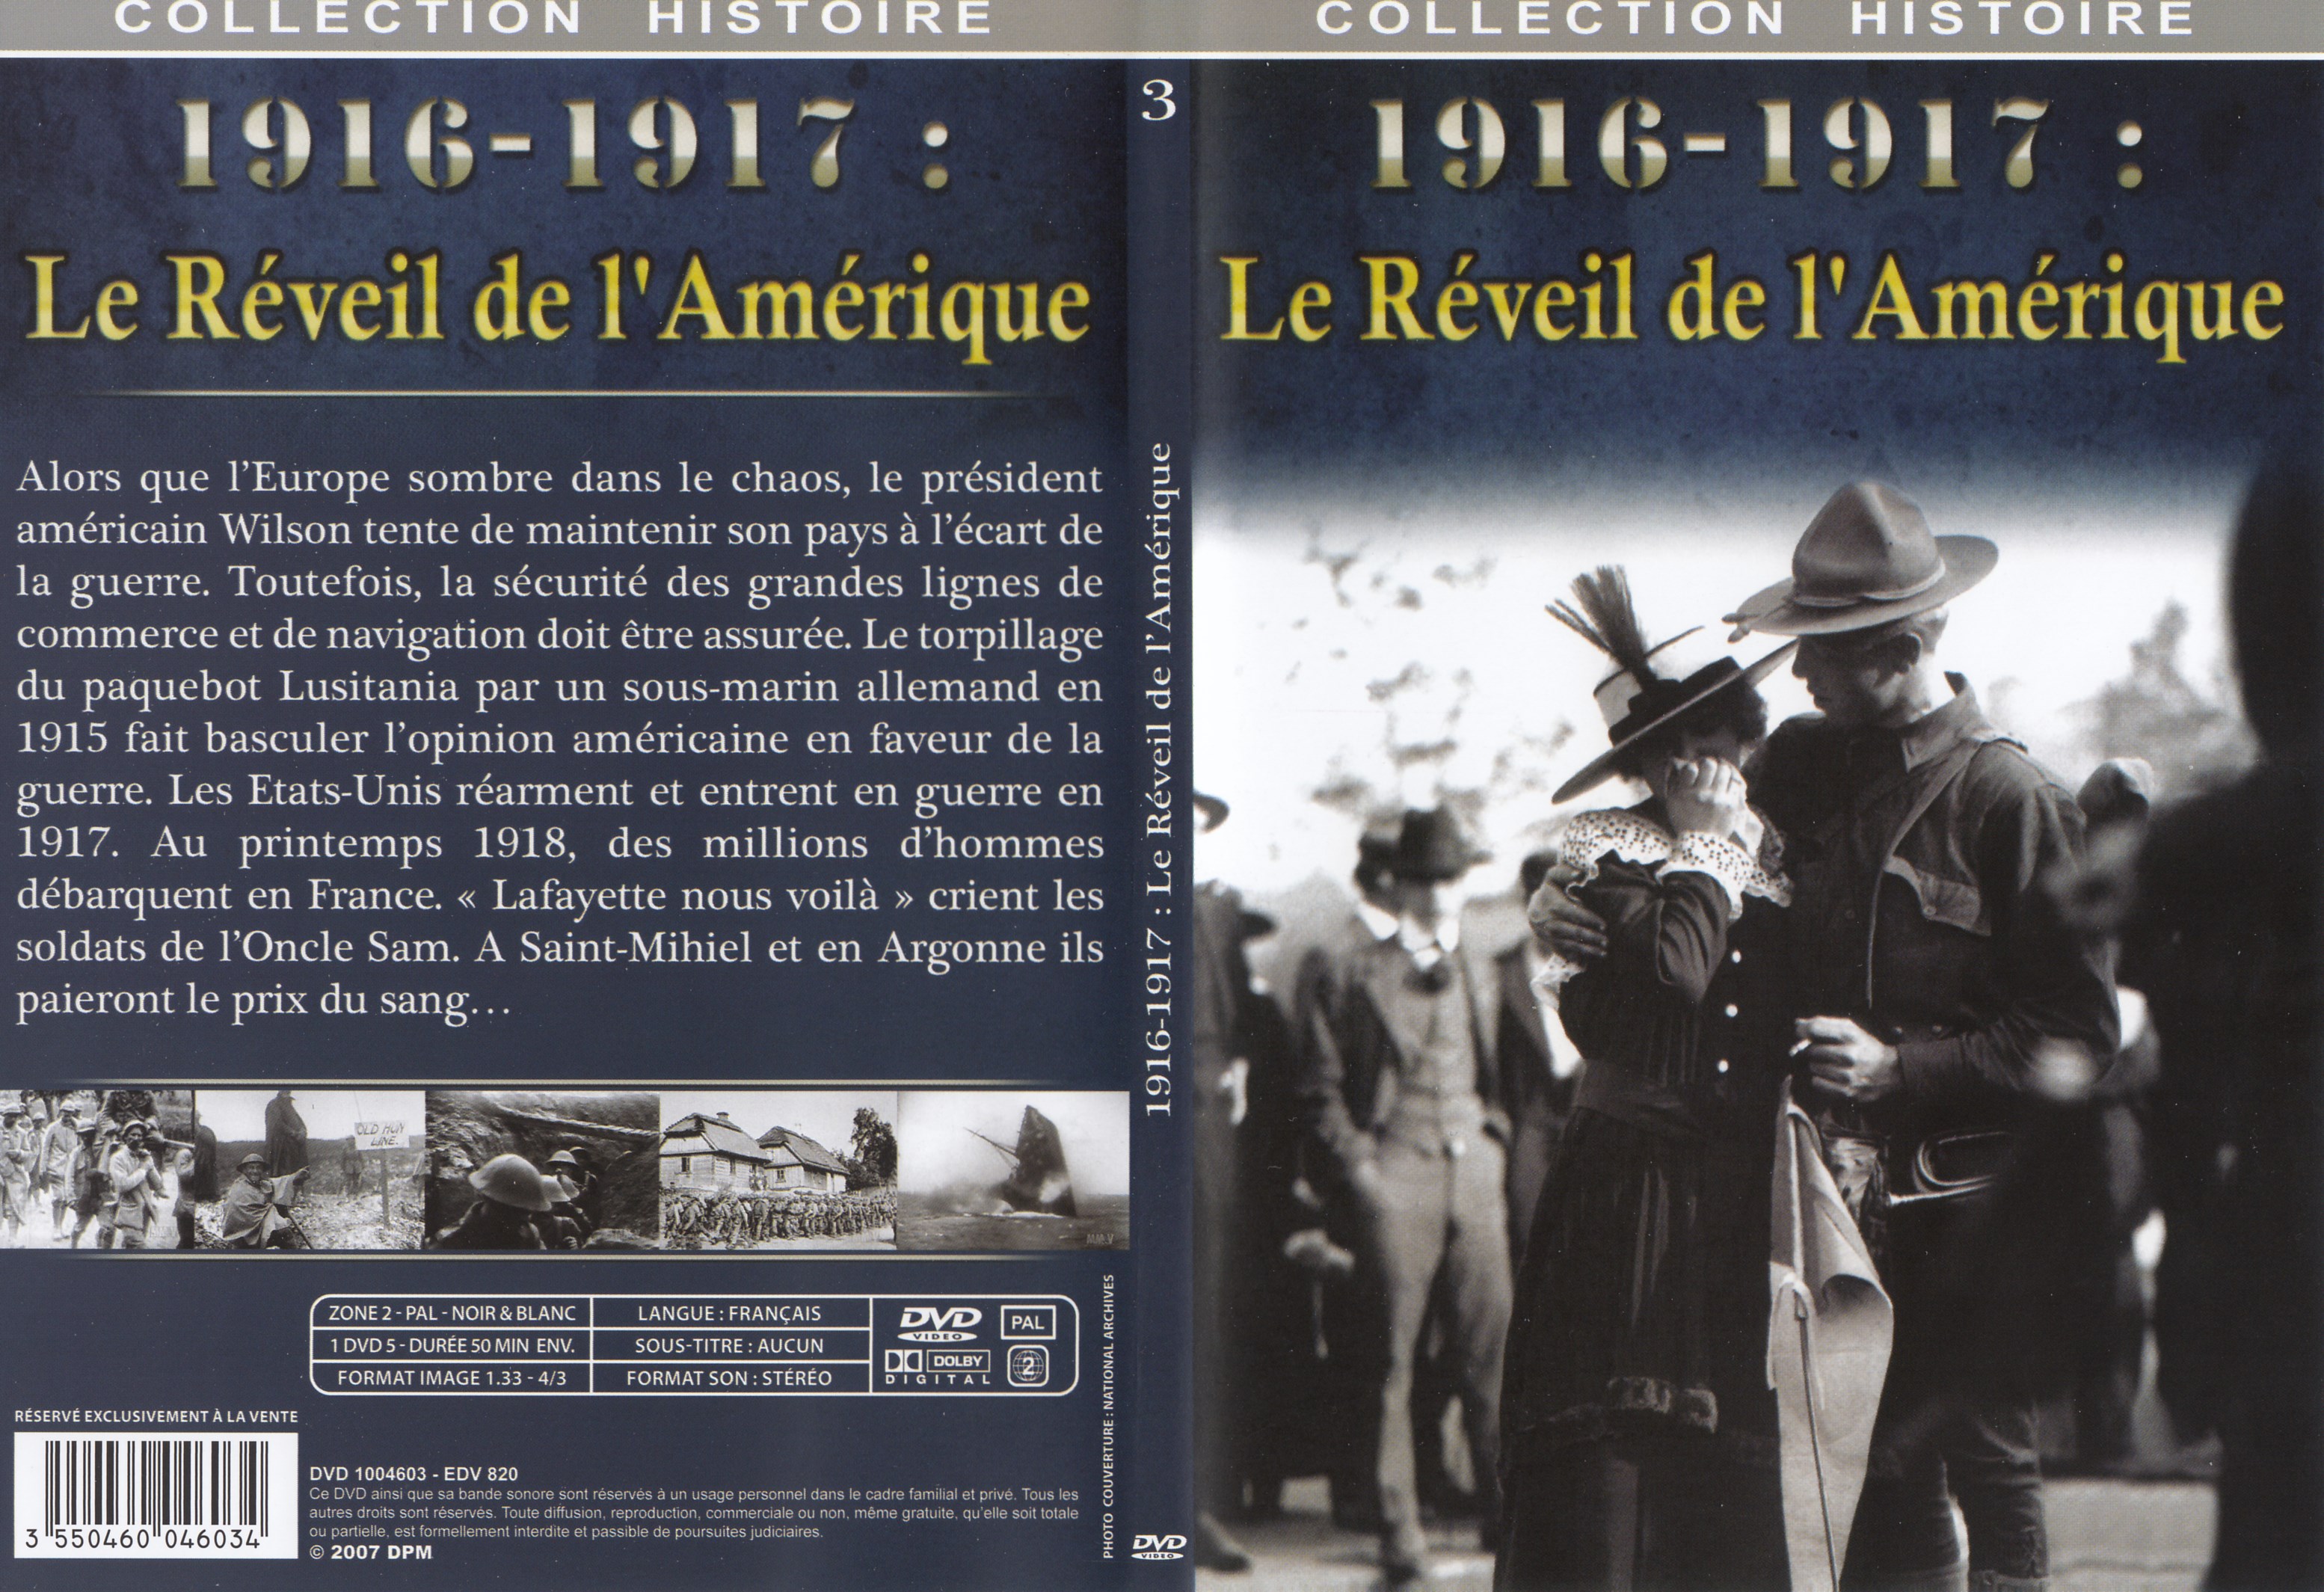 Jaquette DVD Collection Histoire DVD 3 = 1916 - 1917 Le rveil de l